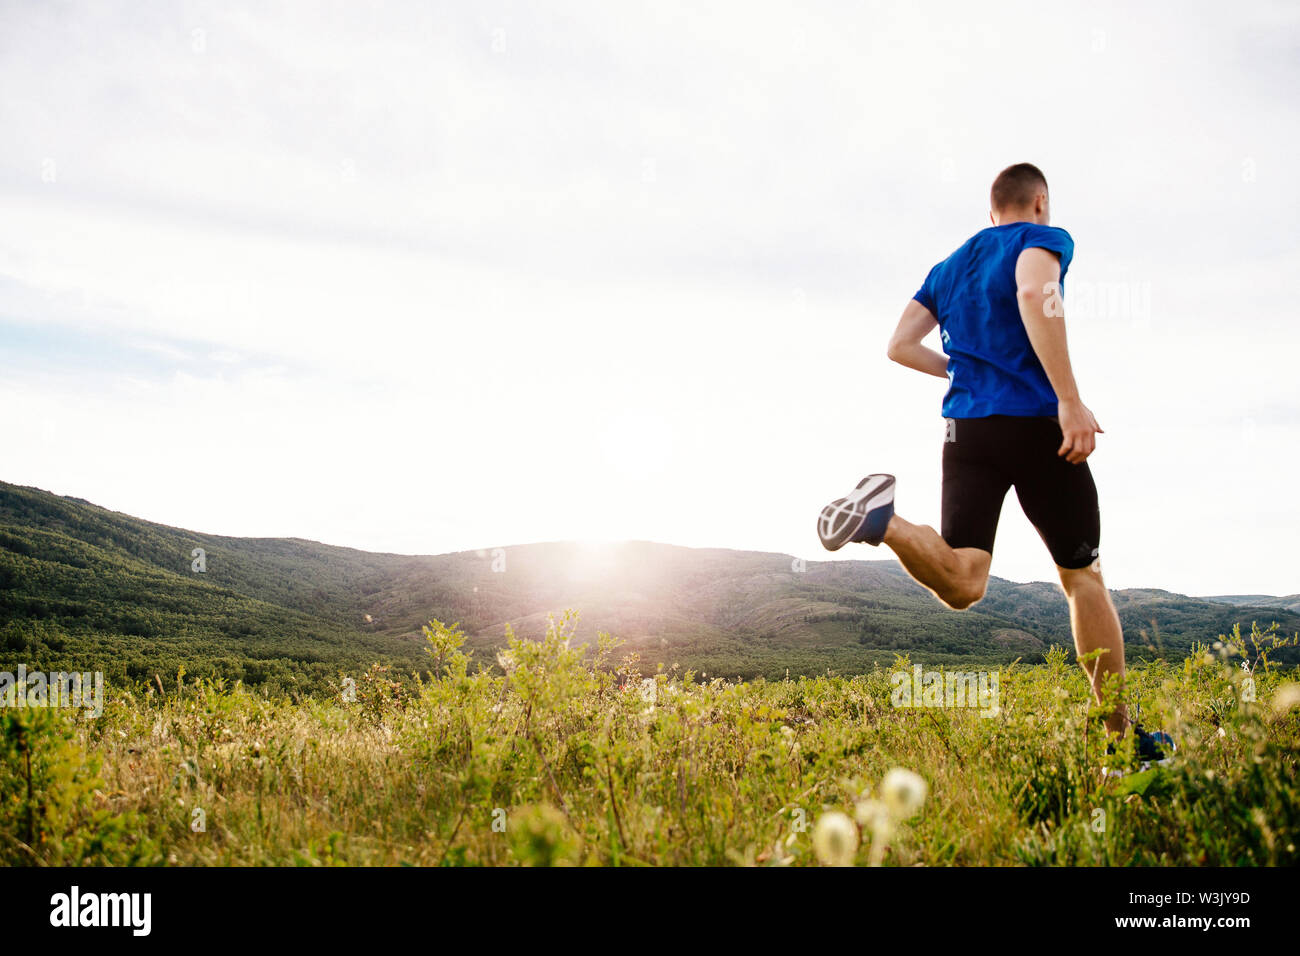 Torna uomo runner in esecuzione sul plateau estivo motley erba nel tramonto Foto Stock